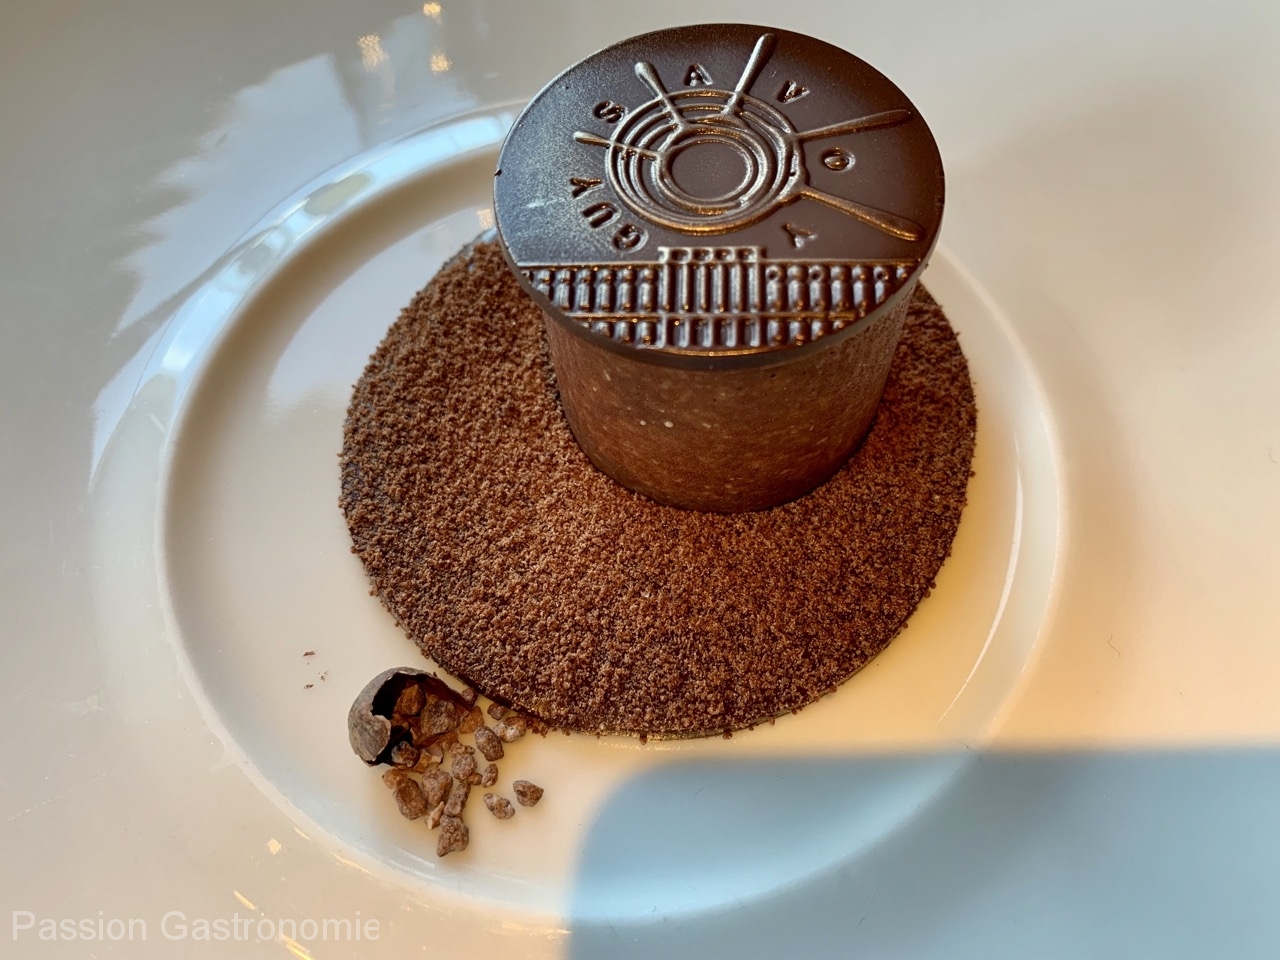 Restaurant Guy Savoy - Purement chocolat sous la monnaie de Paris